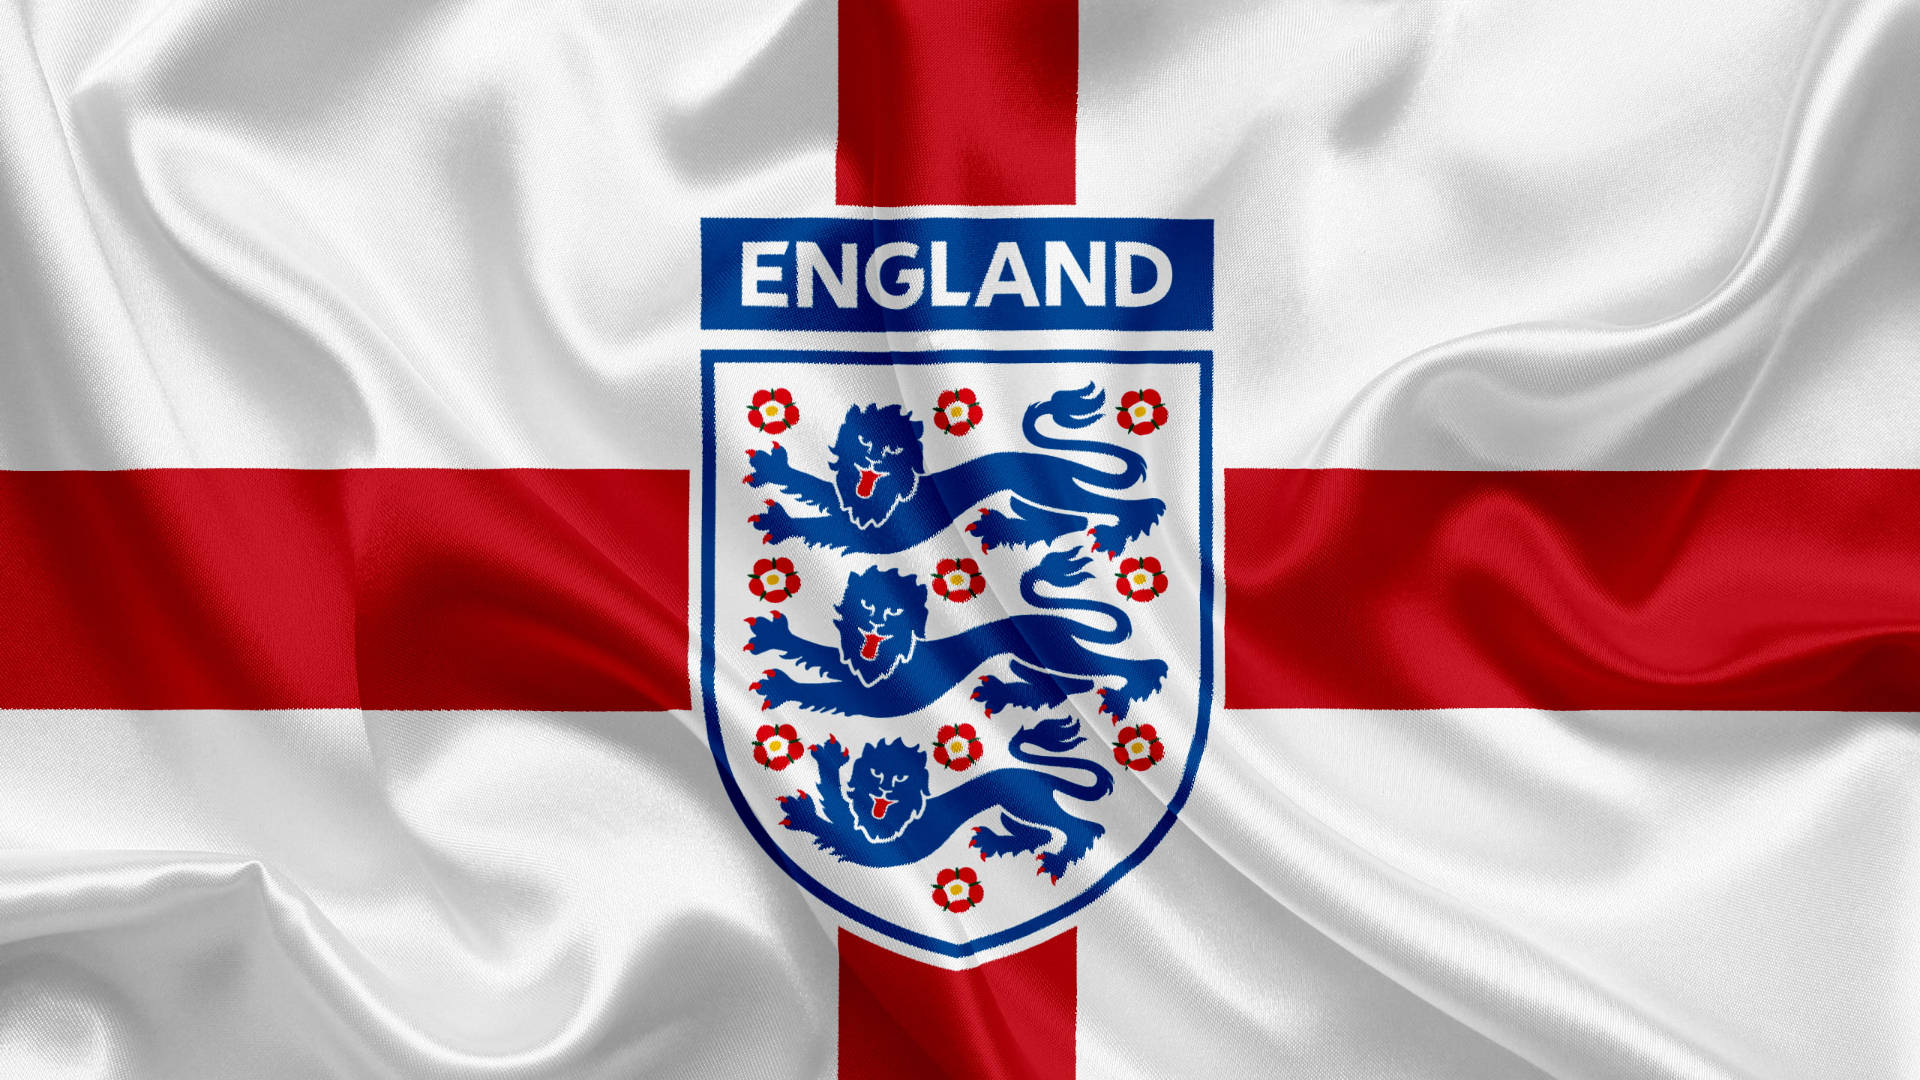 Plano De Fundo Do Futebol Da Inglaterra